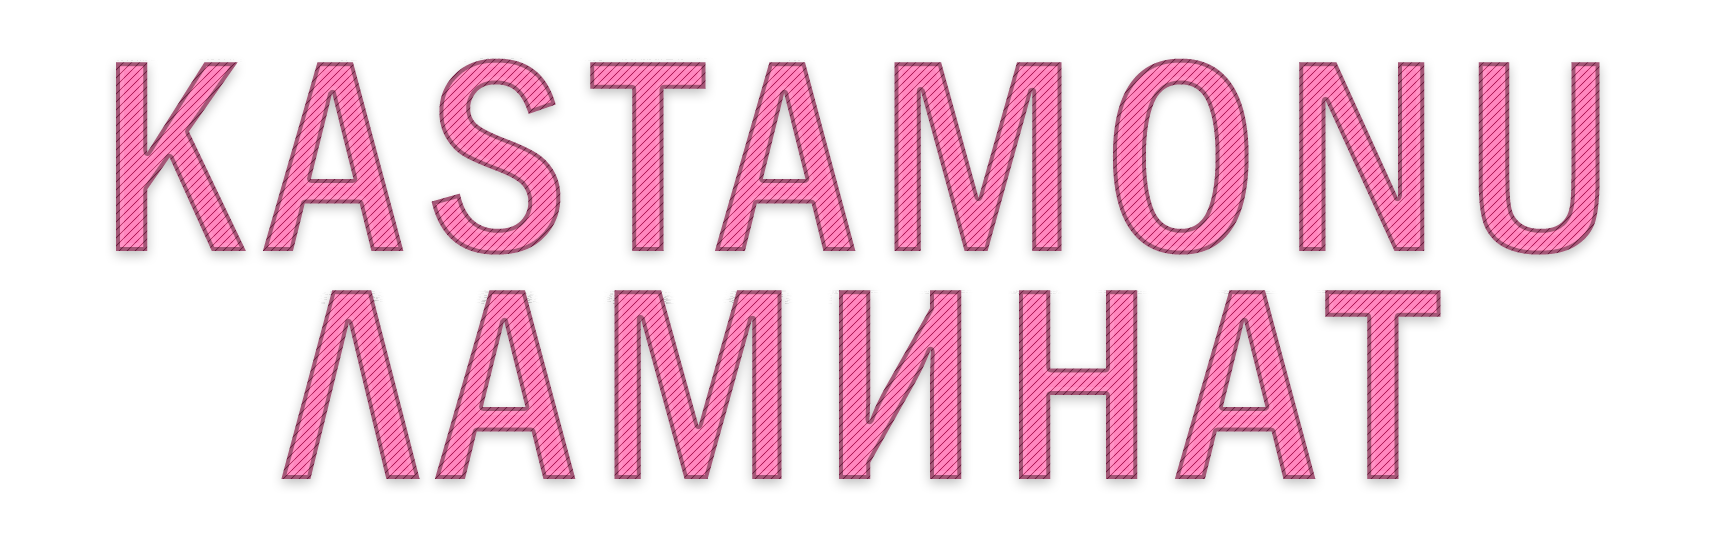 Kastamonu Laminate Логотип